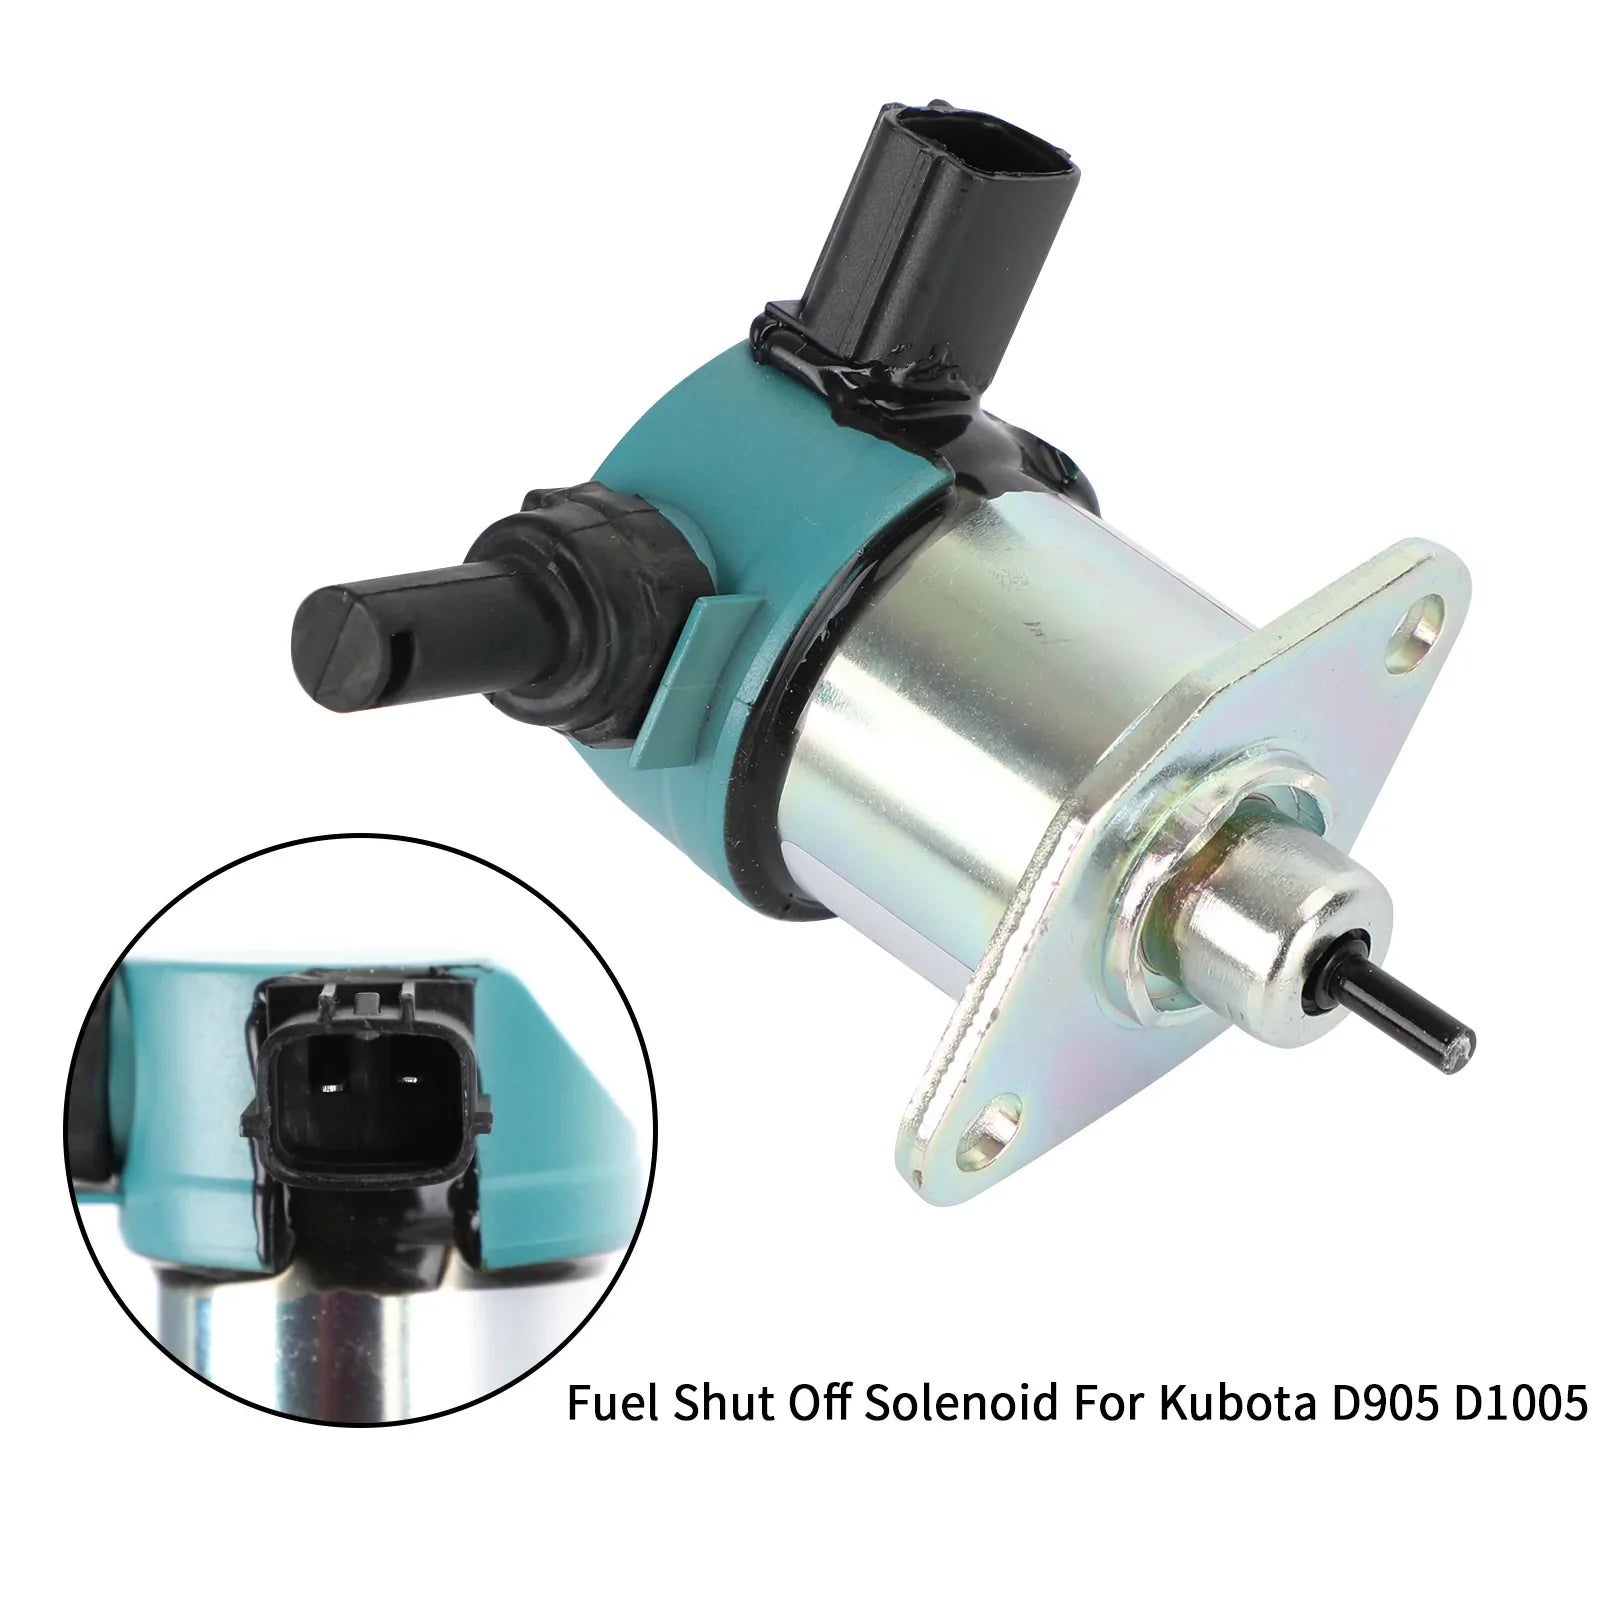 Solenoide de cierre de combustible para Kubota D905 D1005 D1105 17208-60010 17208-60015